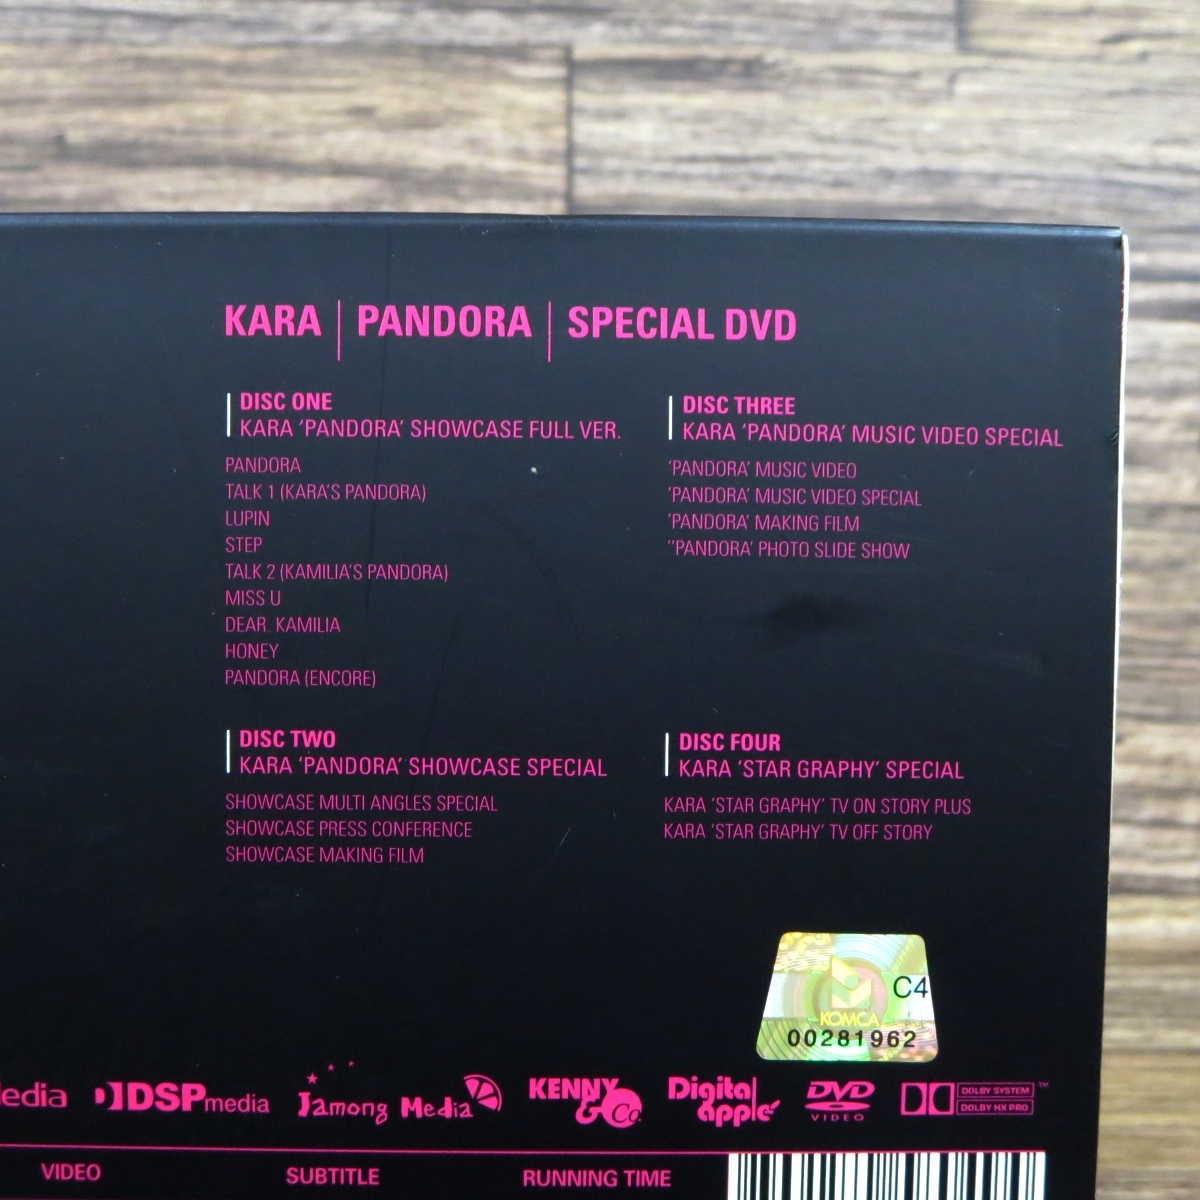 ○【日本語字幕付き】KARA Pandora Special 4DVD+フォトブック限定版